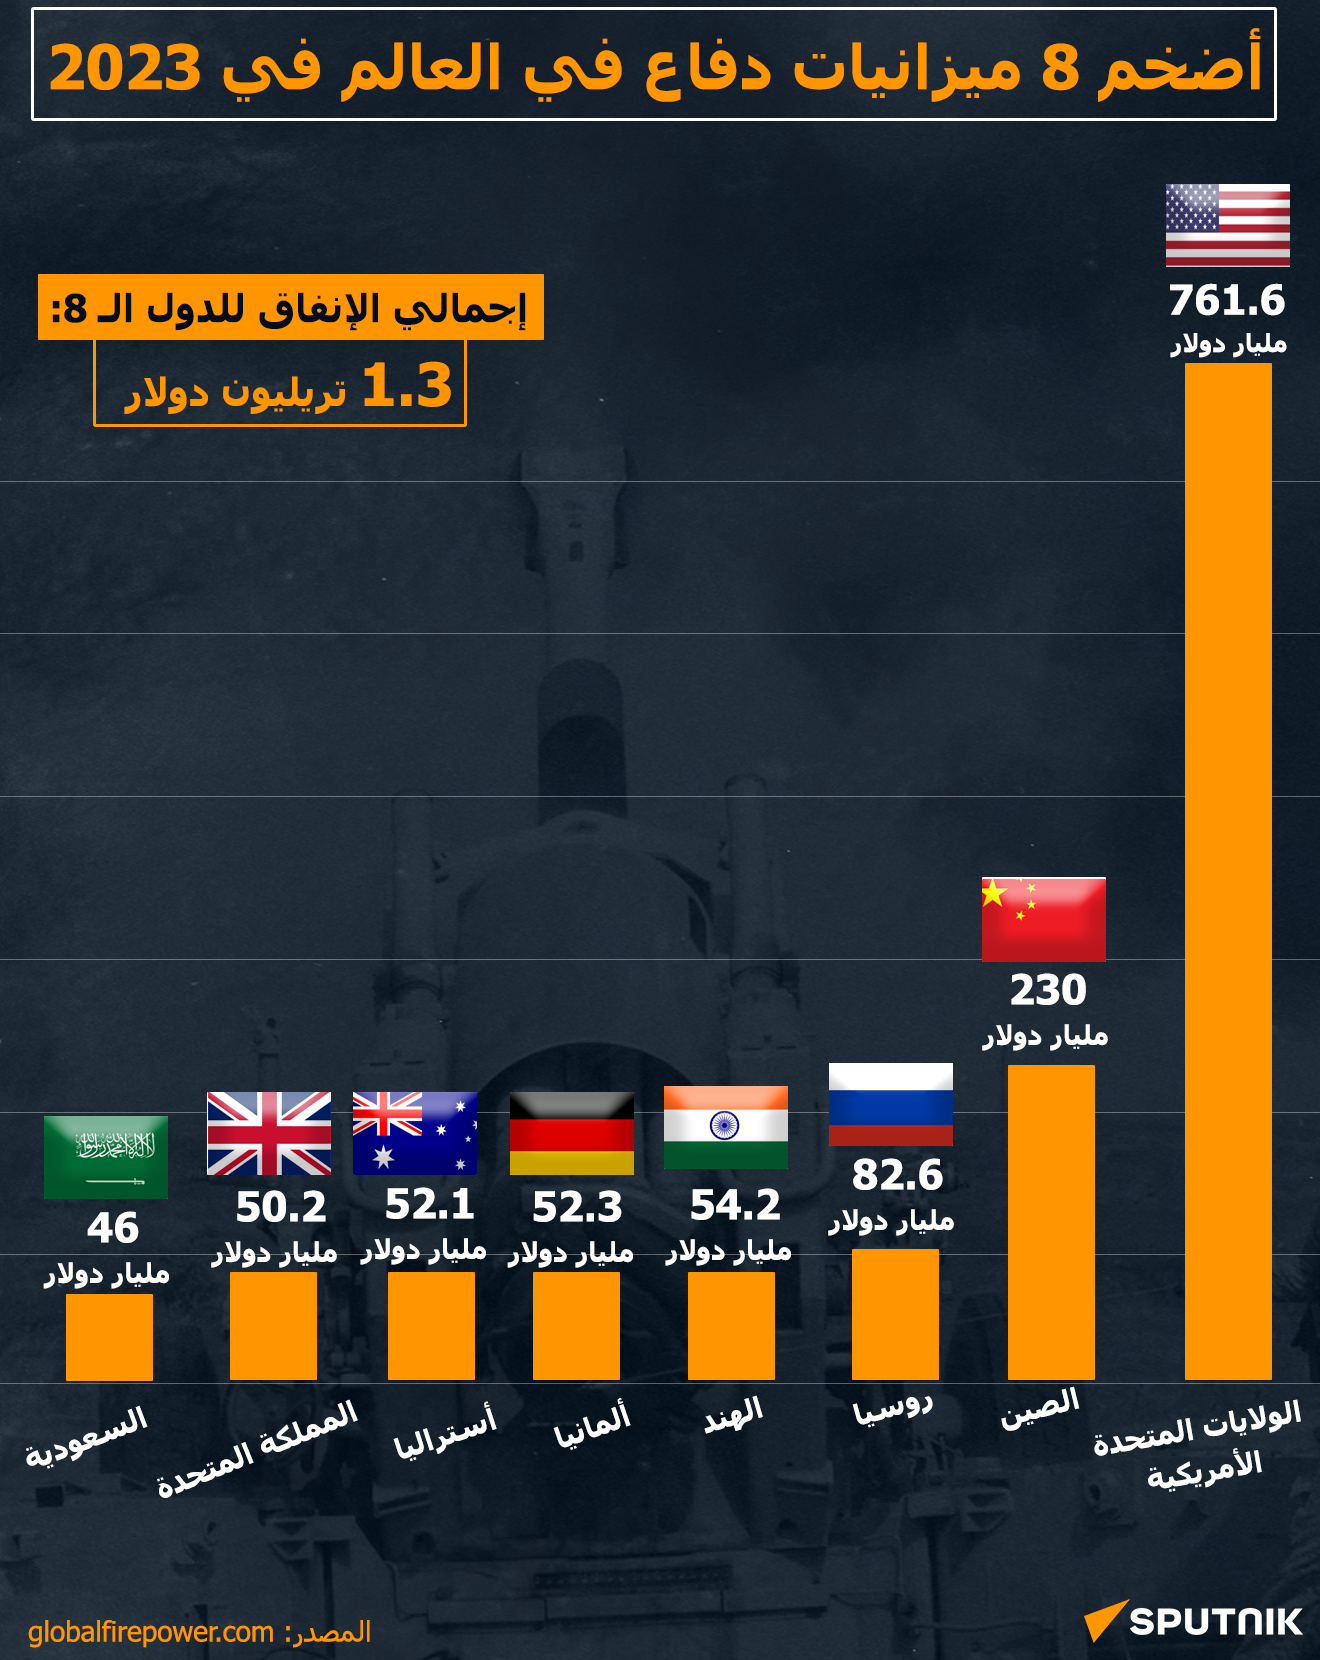 أضخم 8 ميزانيات دفاع في العالم في 2023 - سبوتنيك عربي